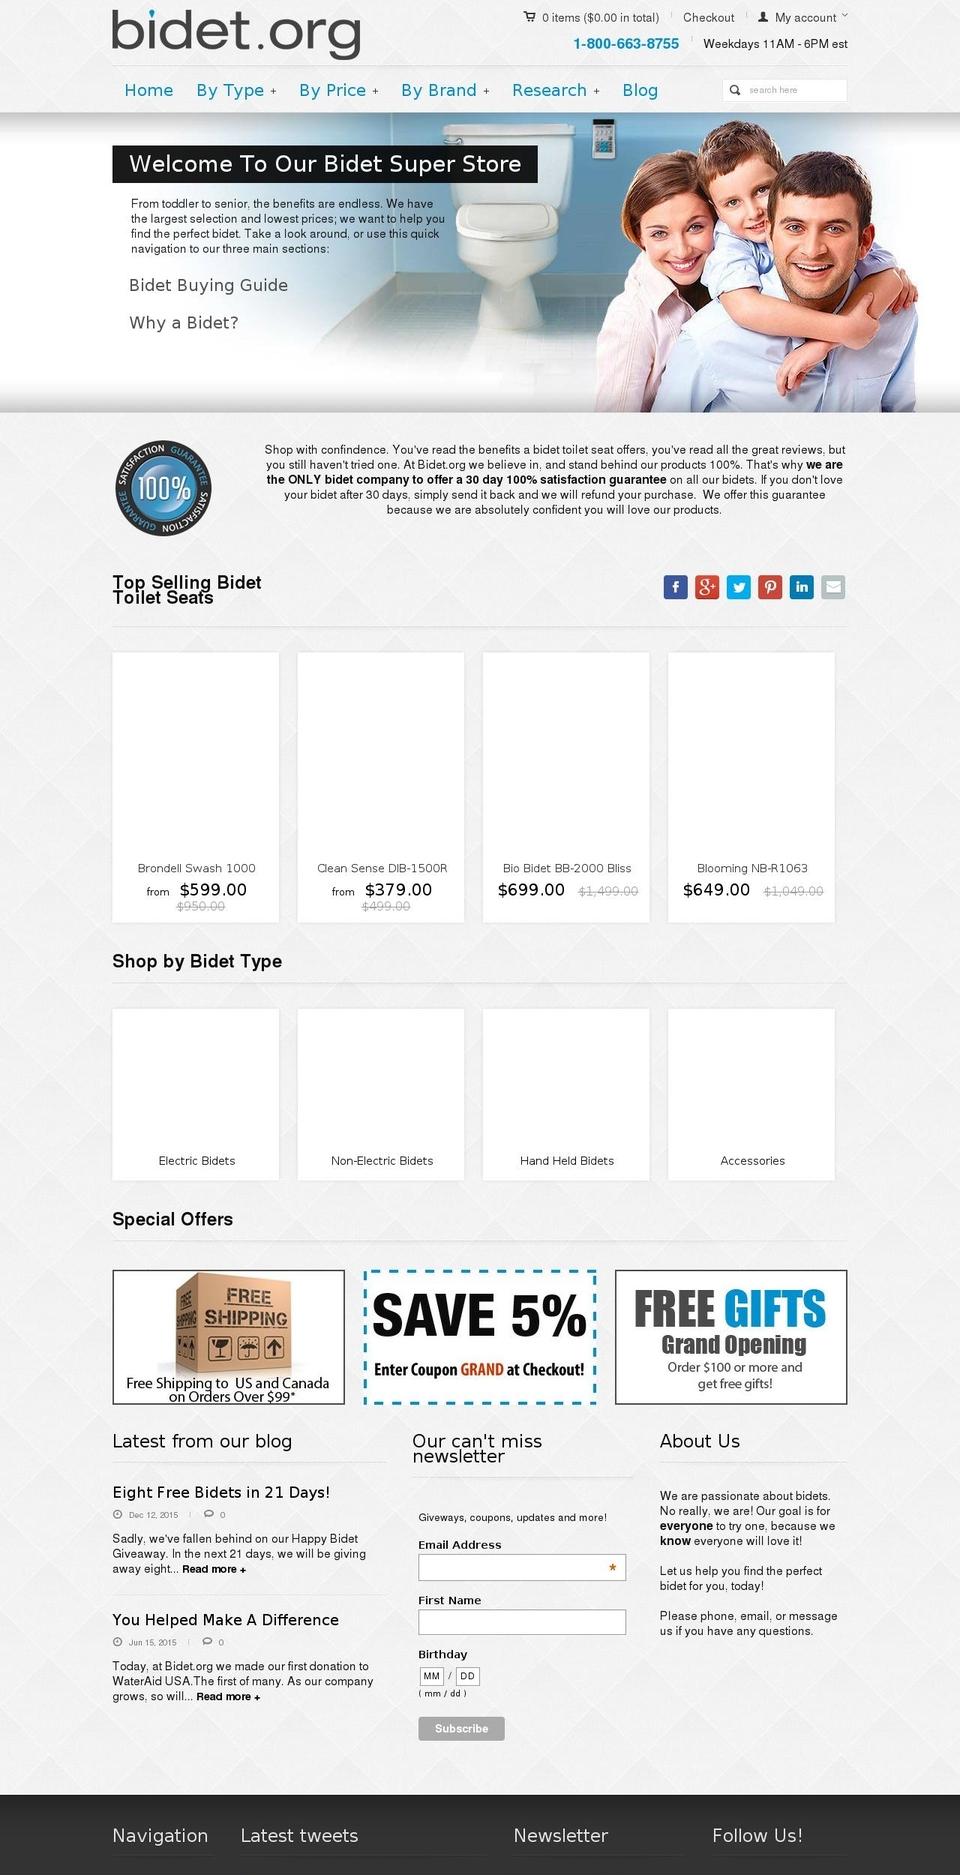 pandora Shopify theme site example bidet.org